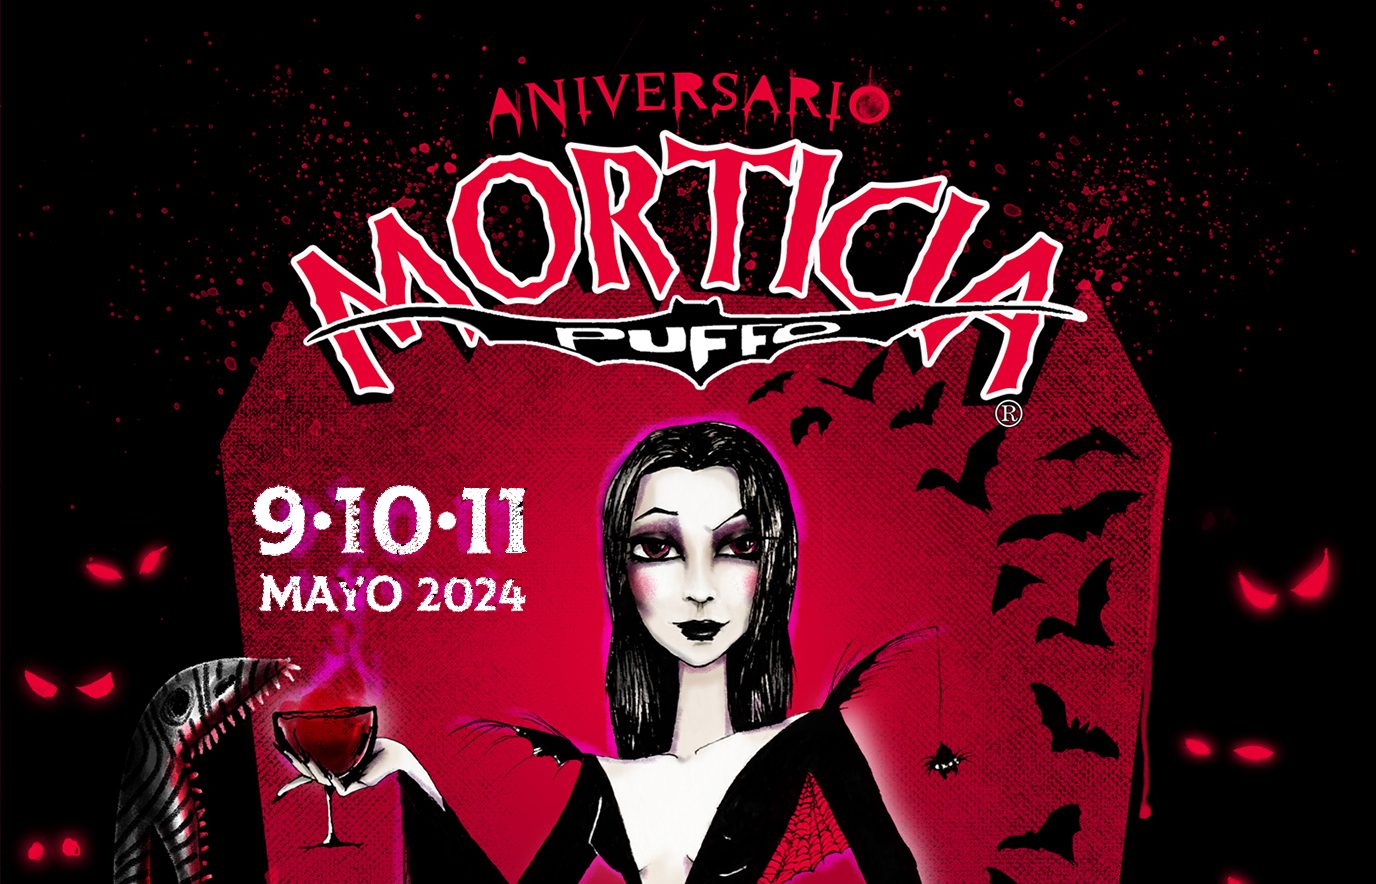 El Pub Morticia celebra su 30 aniversario con un fin de semana de música en directo y sorpresas 1